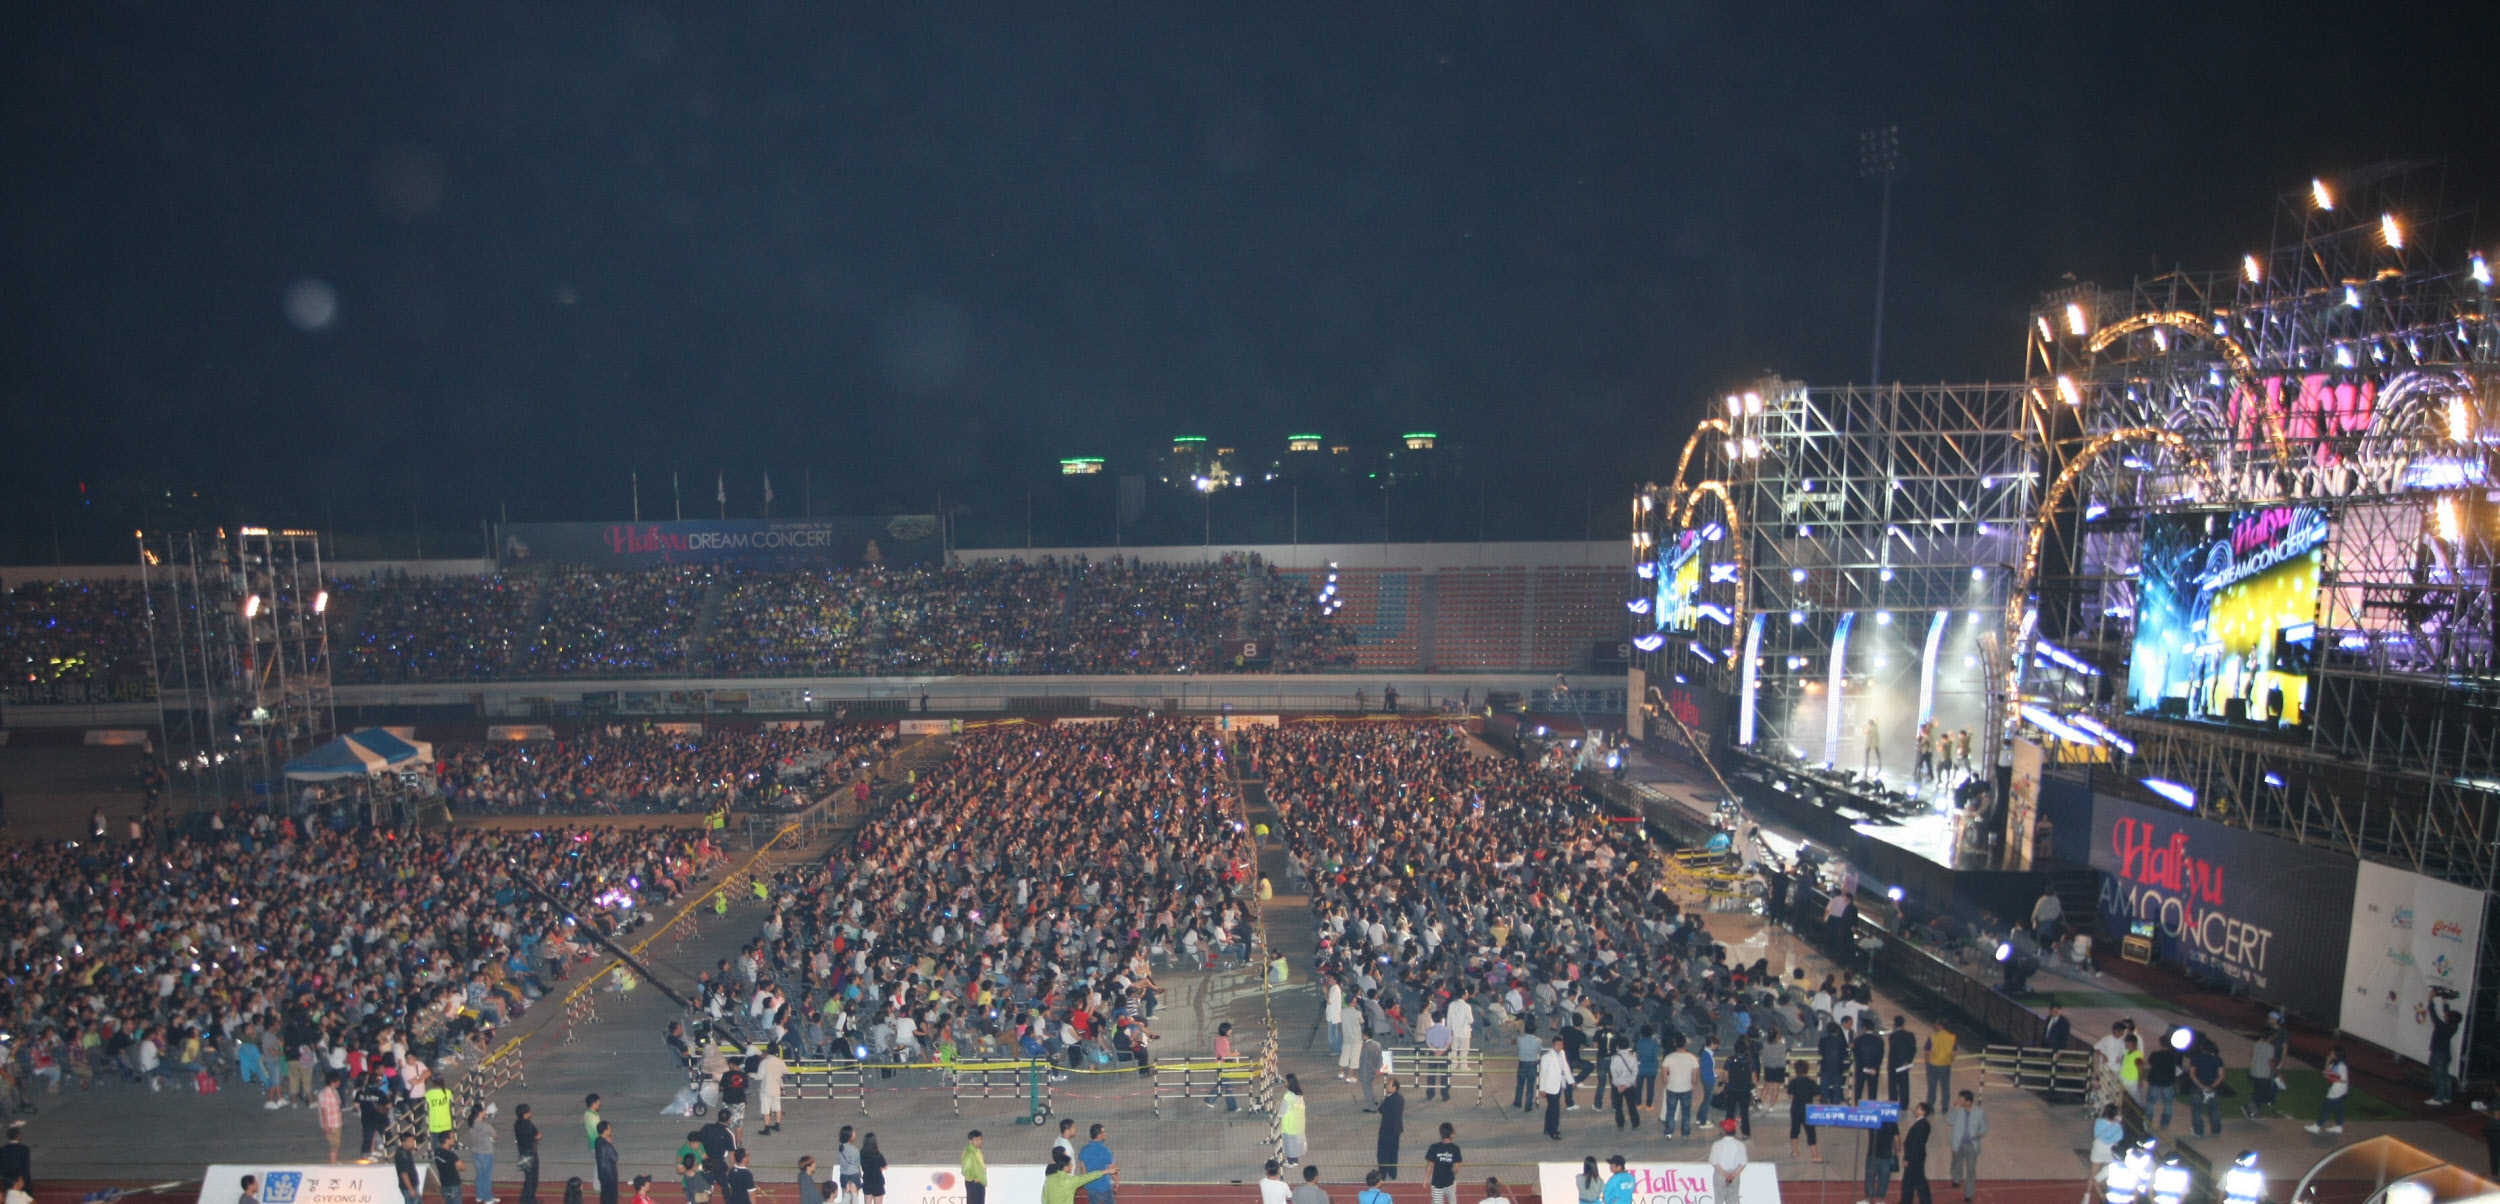 2010~2012 한국방문의 해 기념 특별이벤트 축제 ‘한류드림페스티벌’